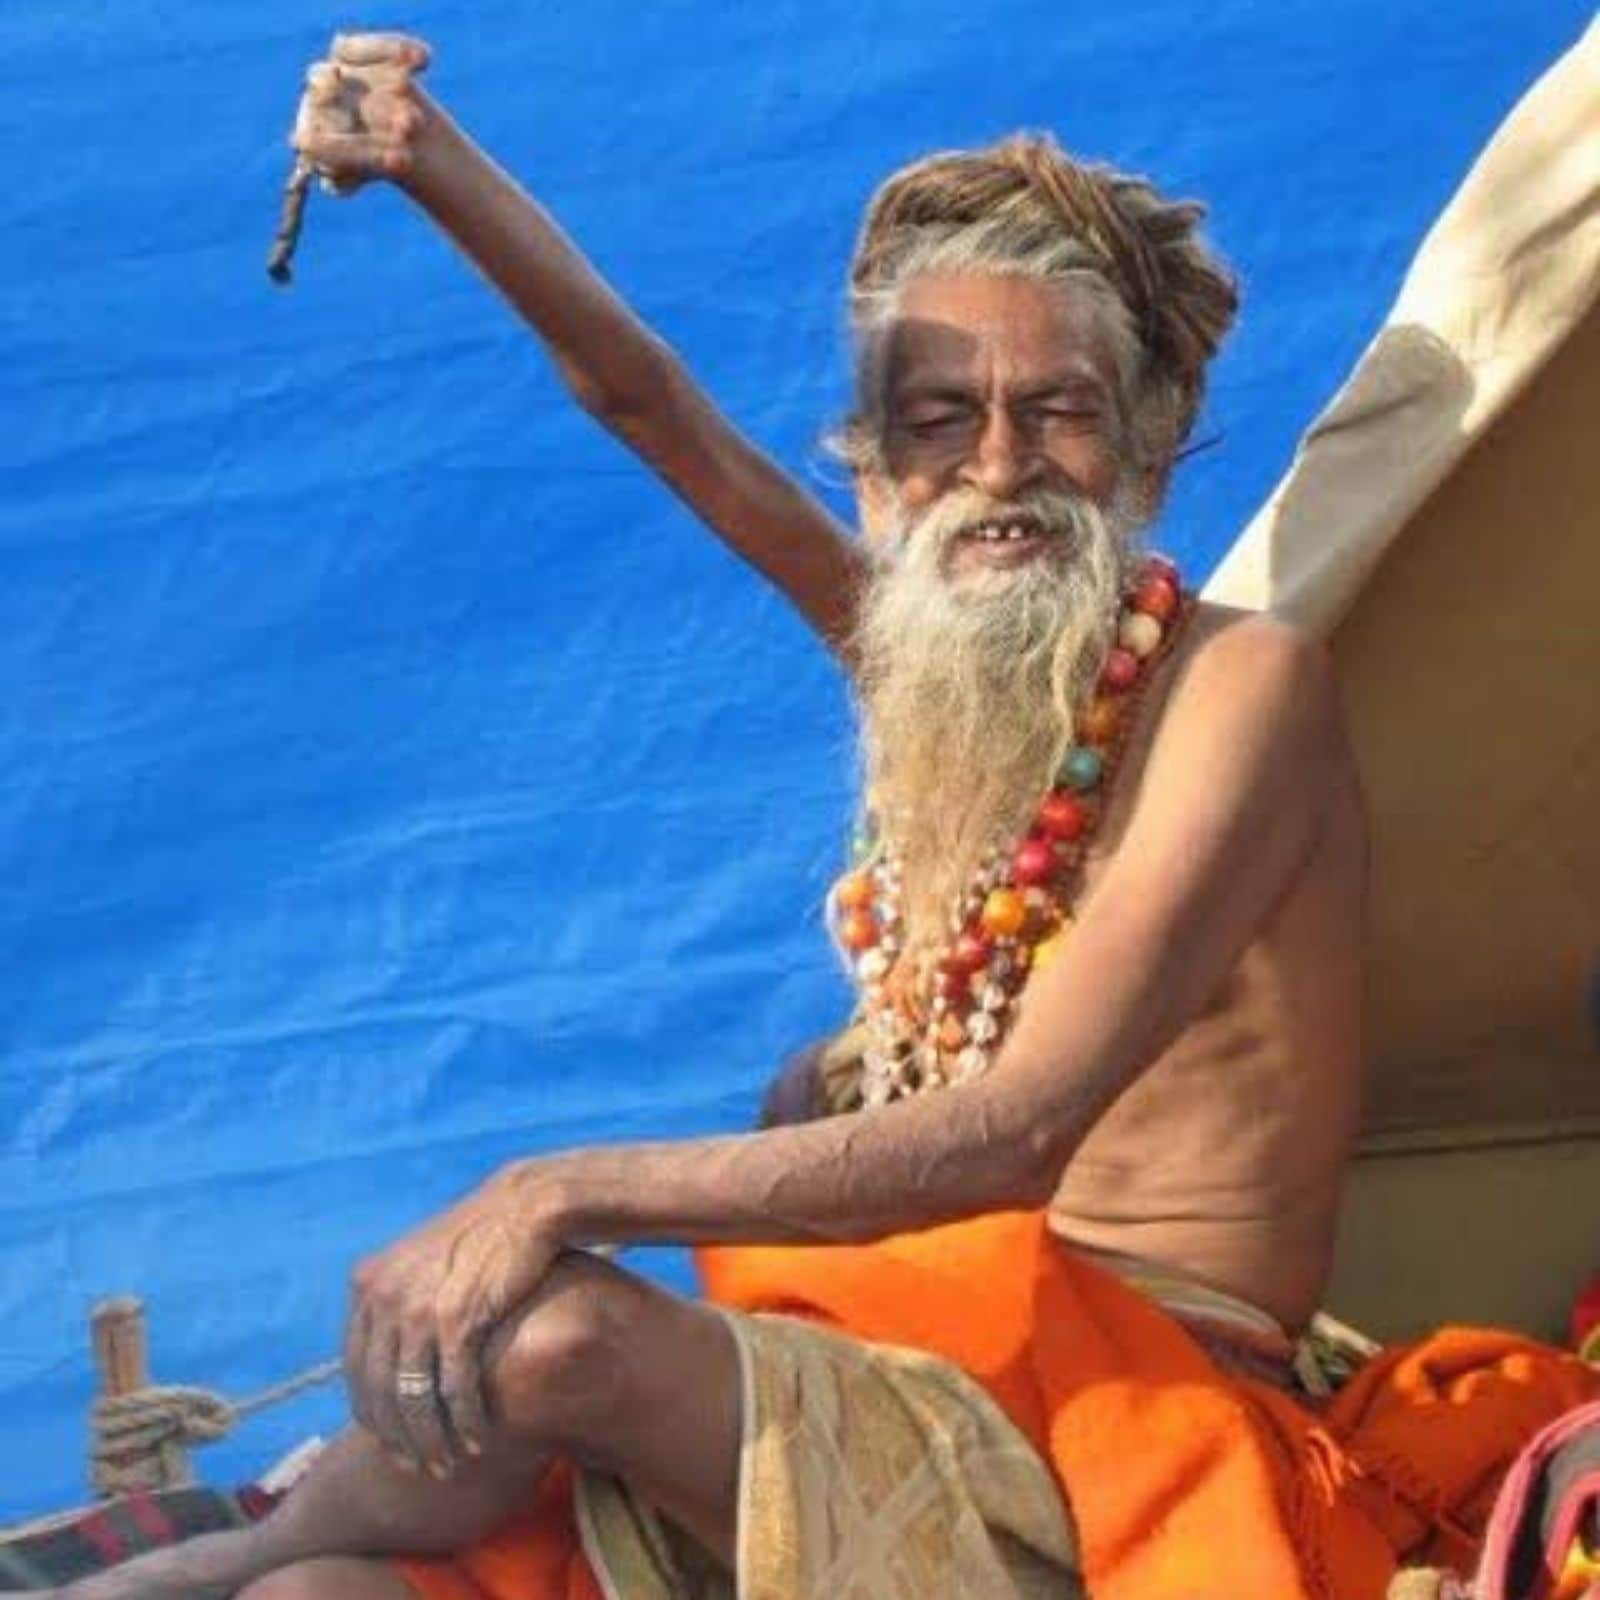 अद्भुत! साधु ने पिछले 48 सालों से हवा में उठाया है अपना एक हाथ, बेहद  चौंकाने वाली है वजह - sadhu amar bharati story who kept hand raised for  past 48 years